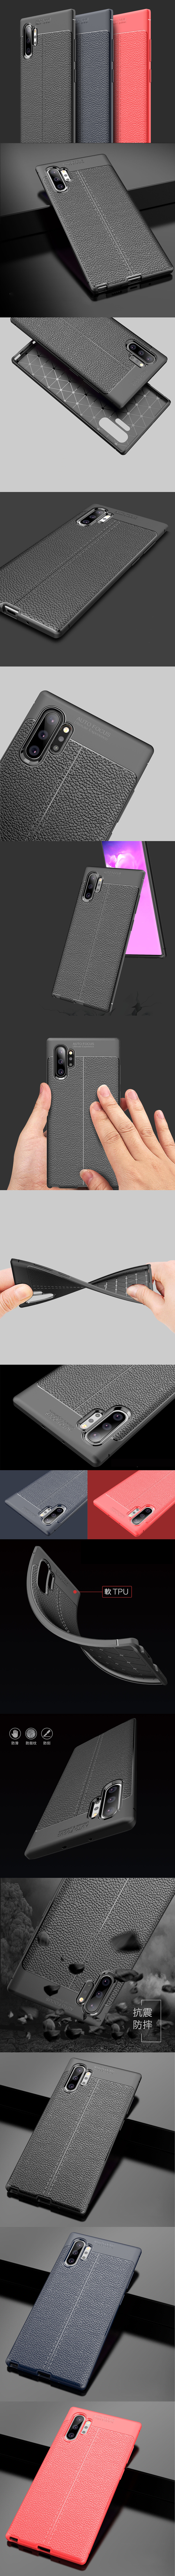 285-Samsung-皮革紋造型超薄全包手機殼背蓋